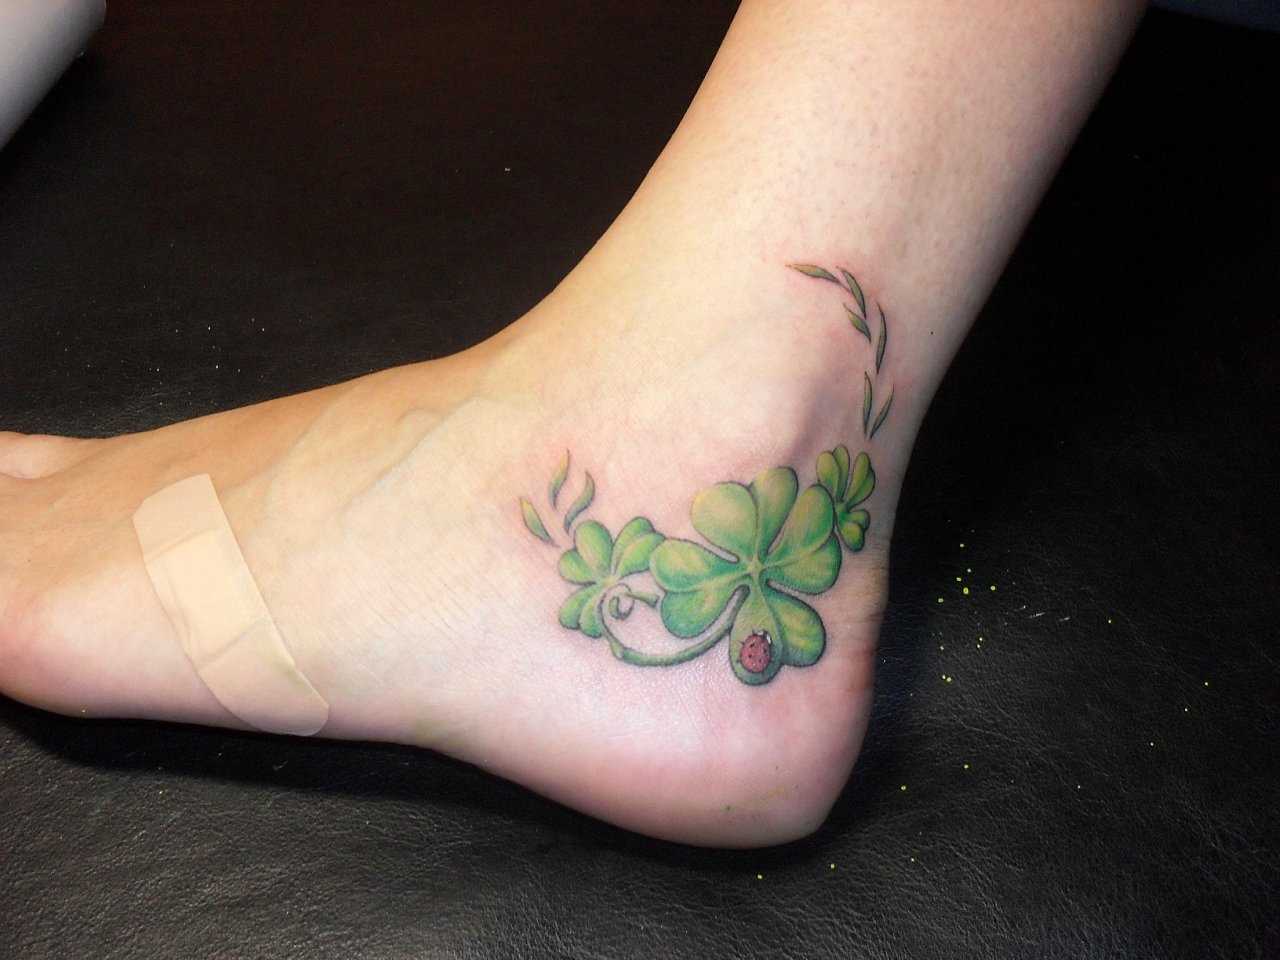 A tatuagem no pé da menina - trevo e joaninha